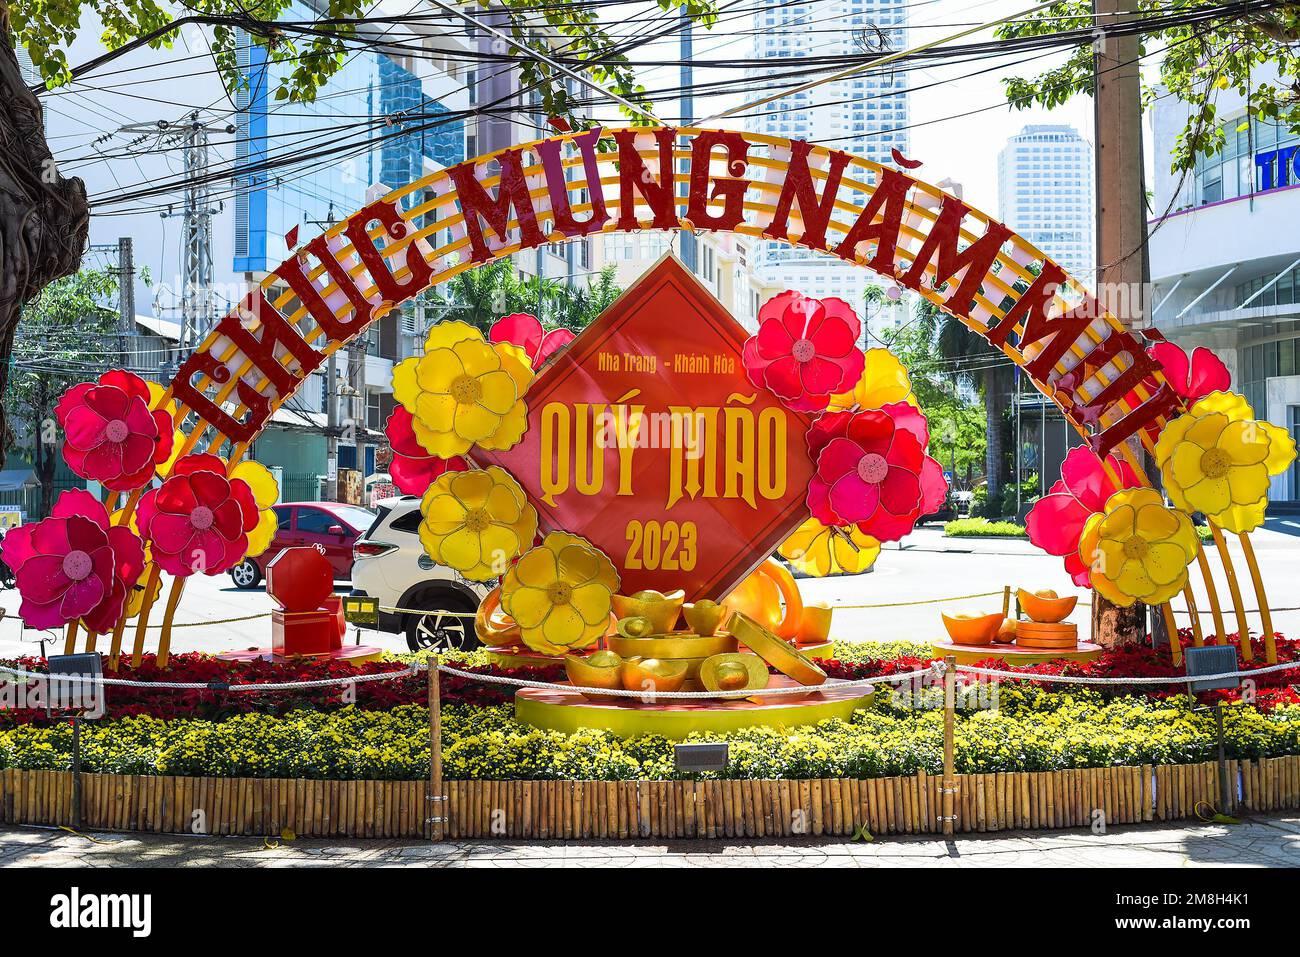 Get your 2023 Lunar New Year tickets — Vietnam Heritage Center